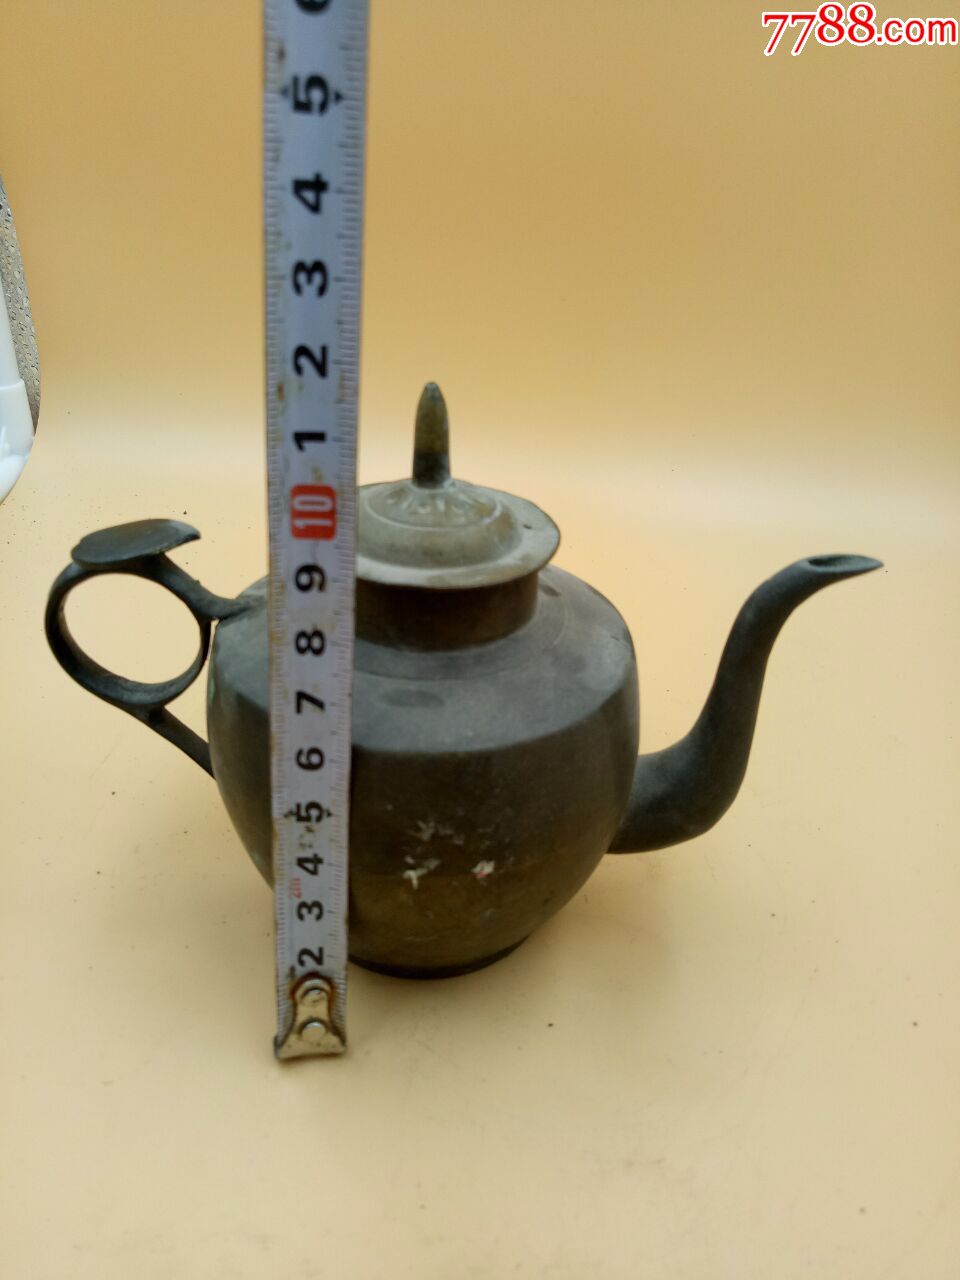 老黄铜茶壶工艺精美细致